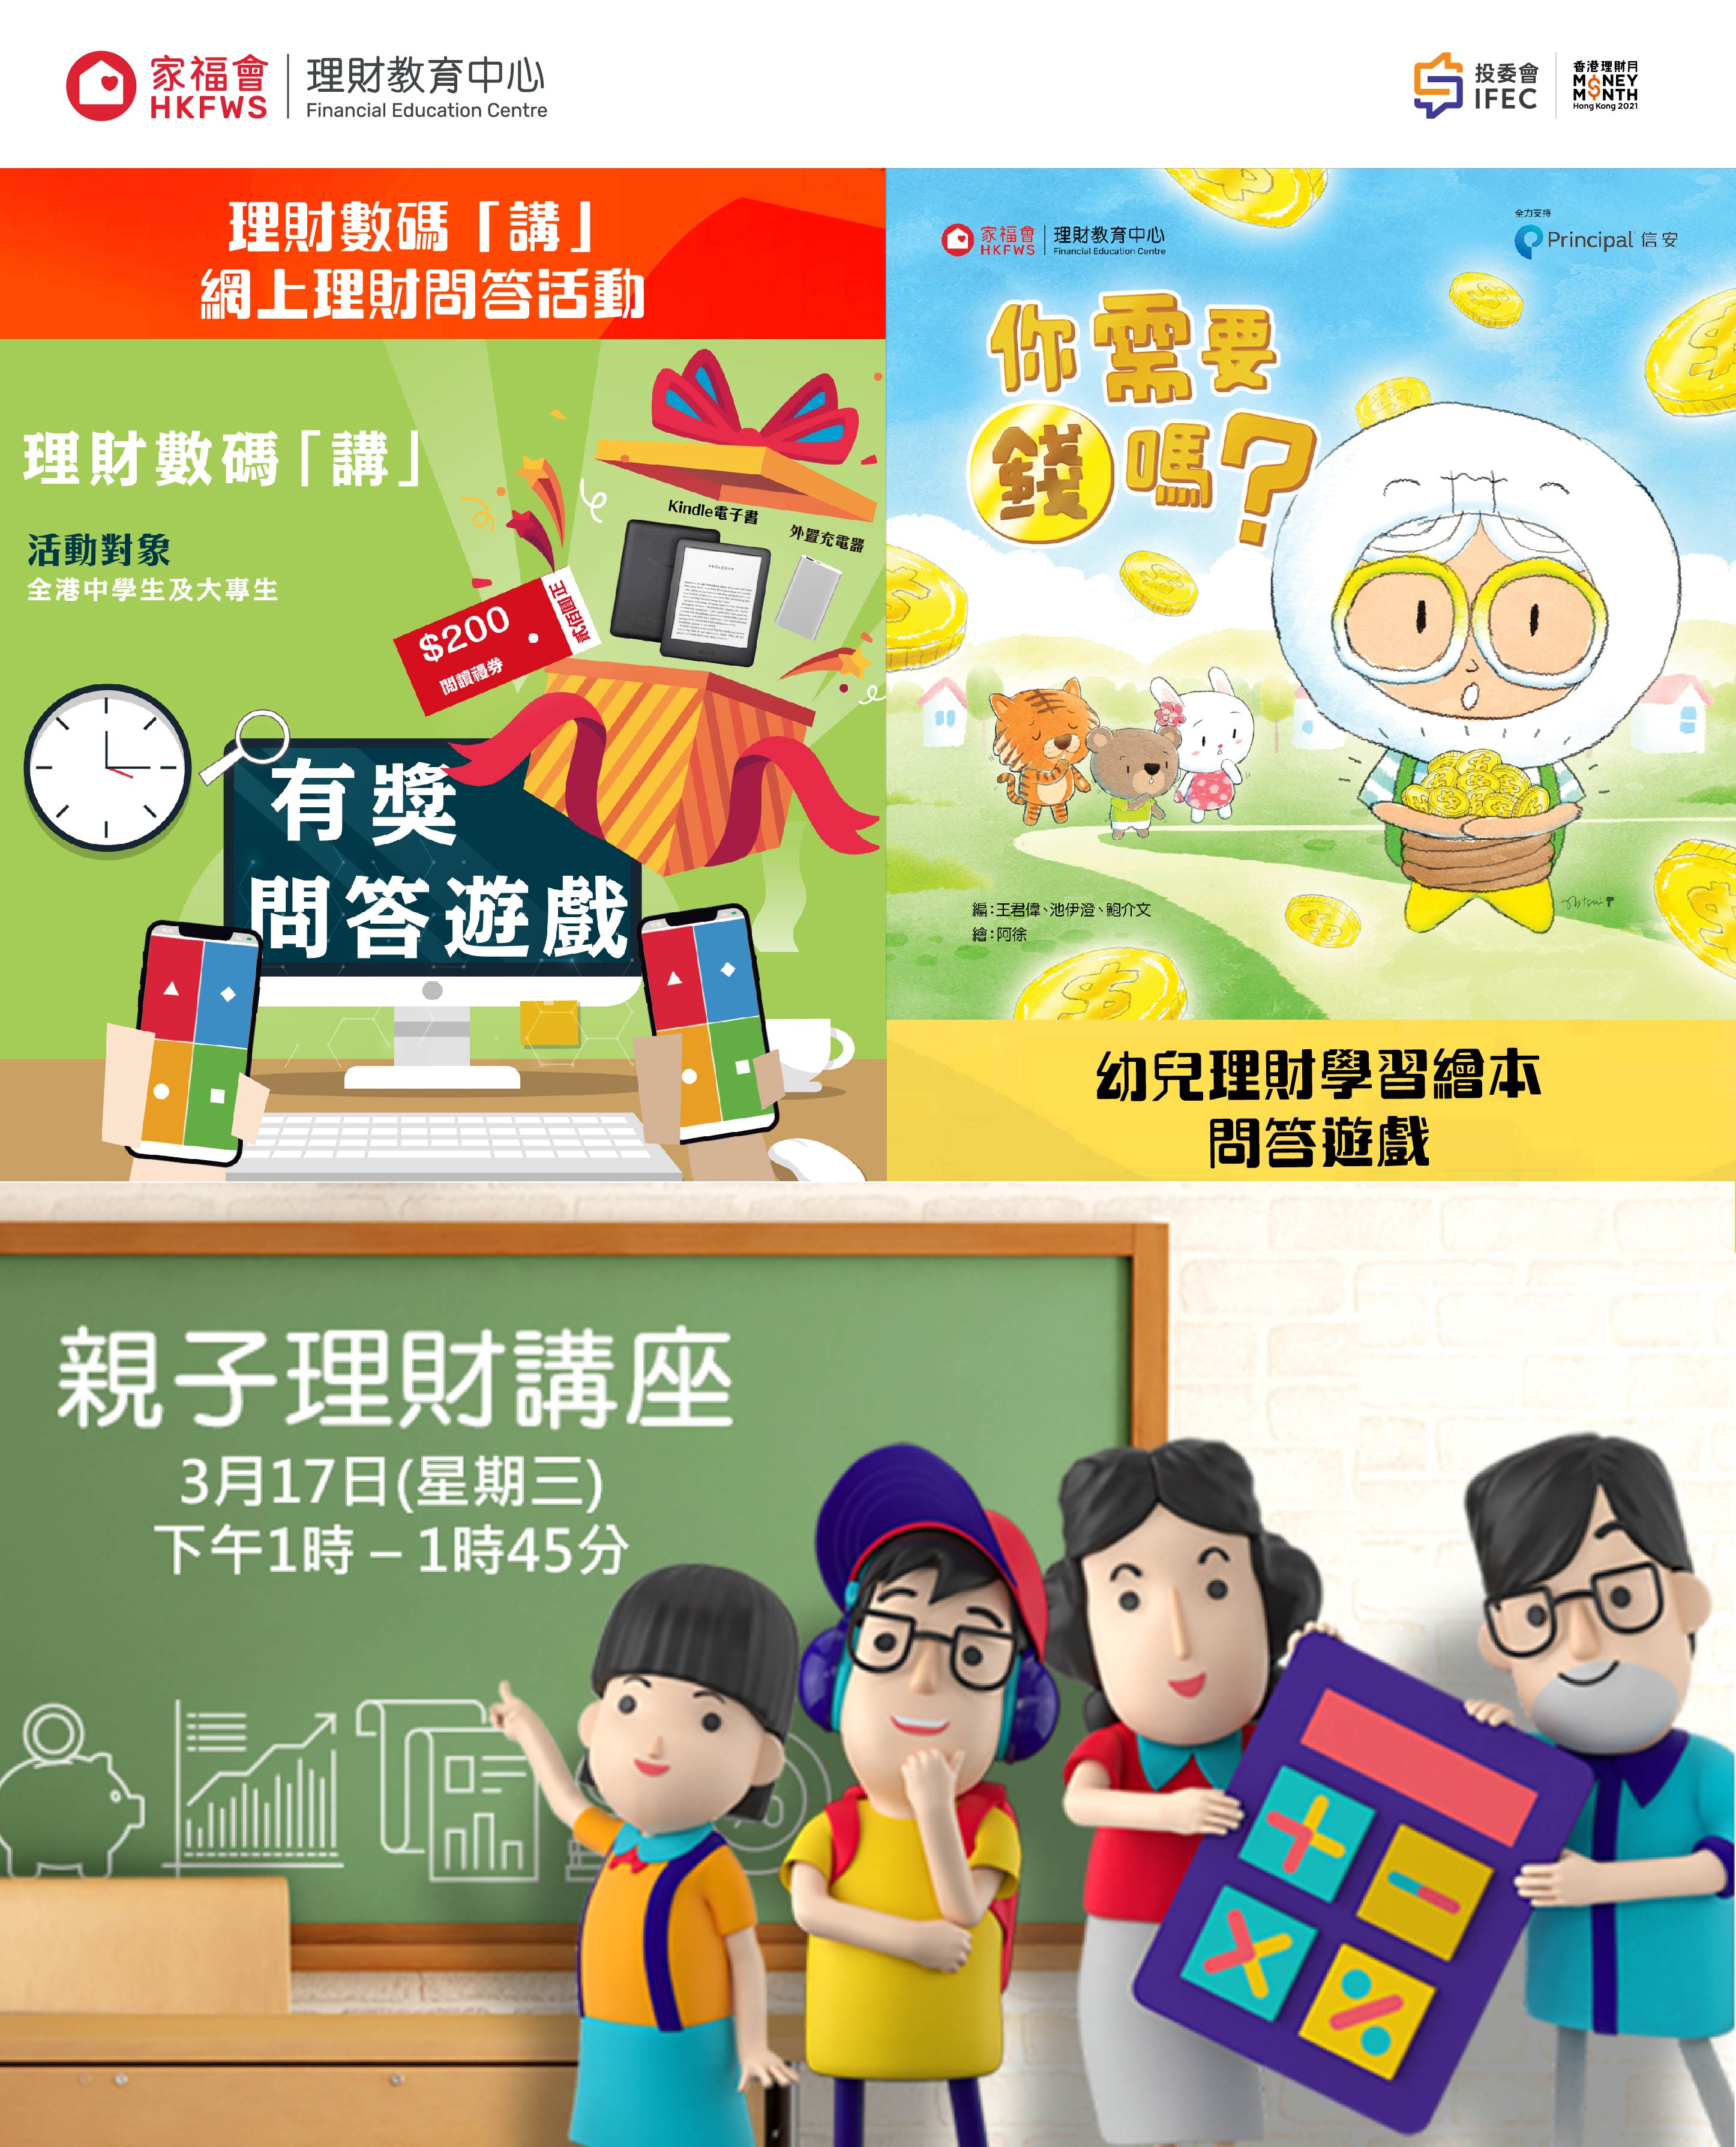 理財教育中心響應「香港理財月2021」推出多項免費理財教育活動